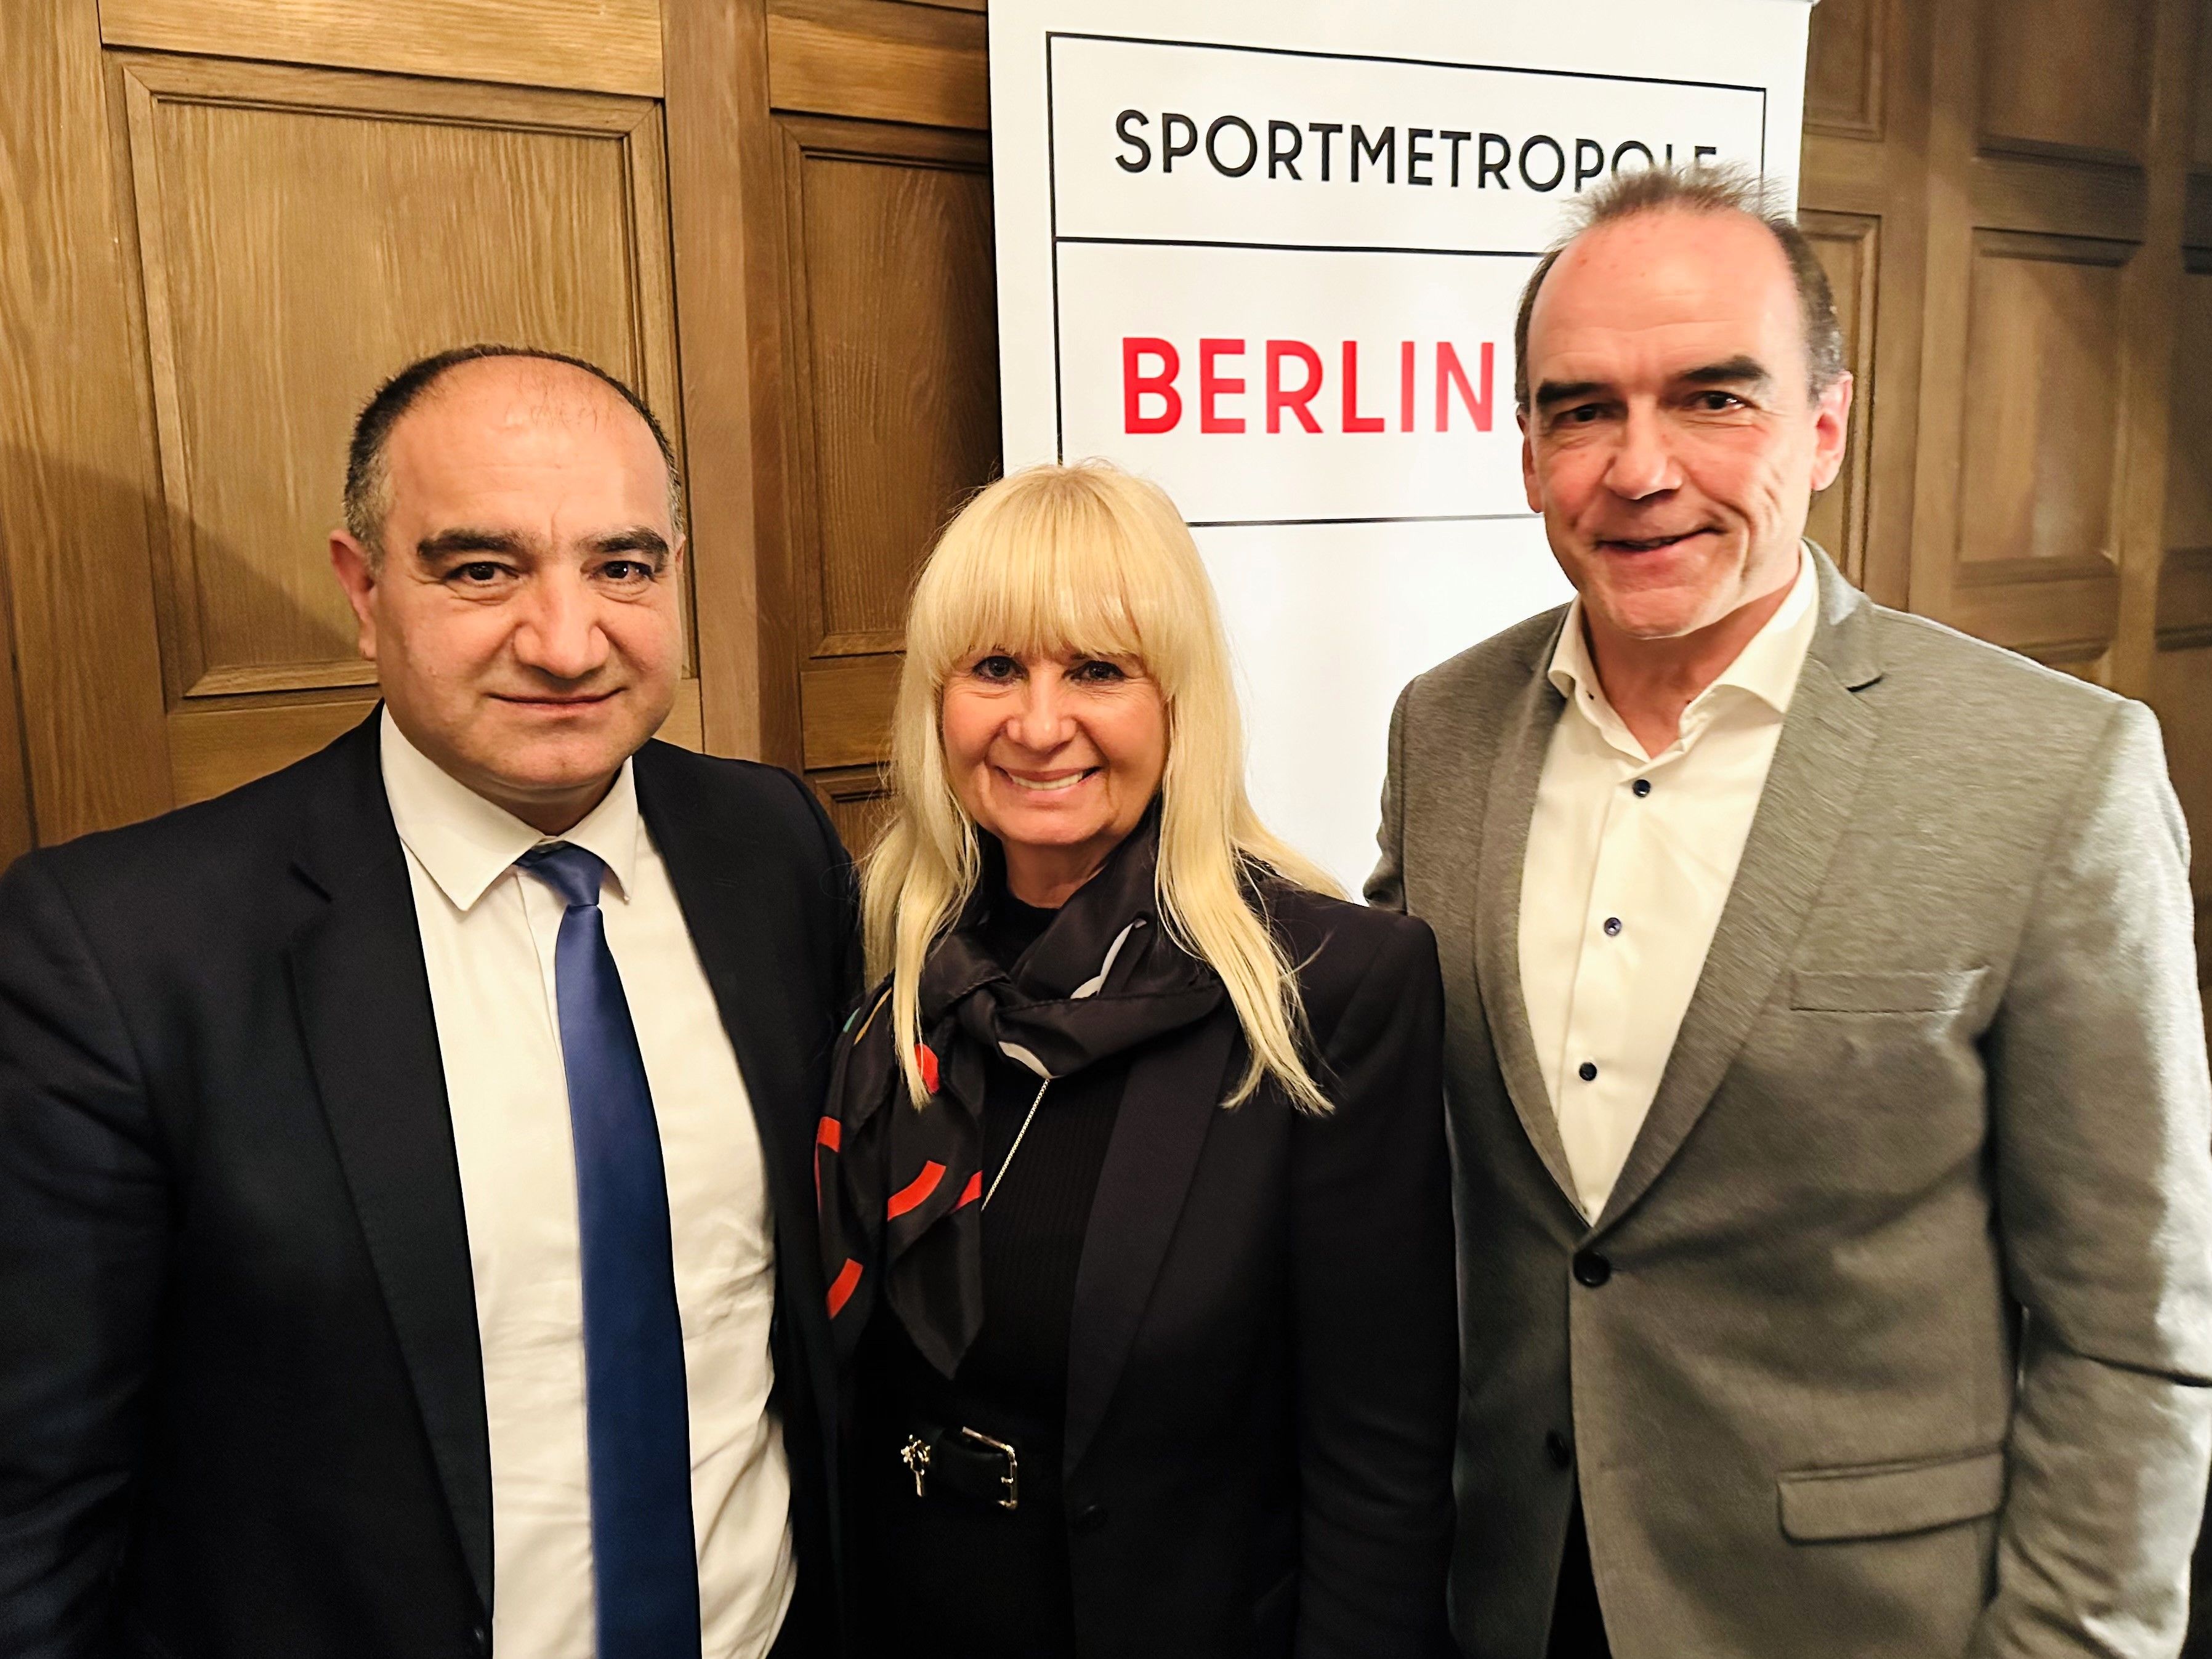 Spielbank Berlin: Inklusion gehört zur Sportstadt Berlin